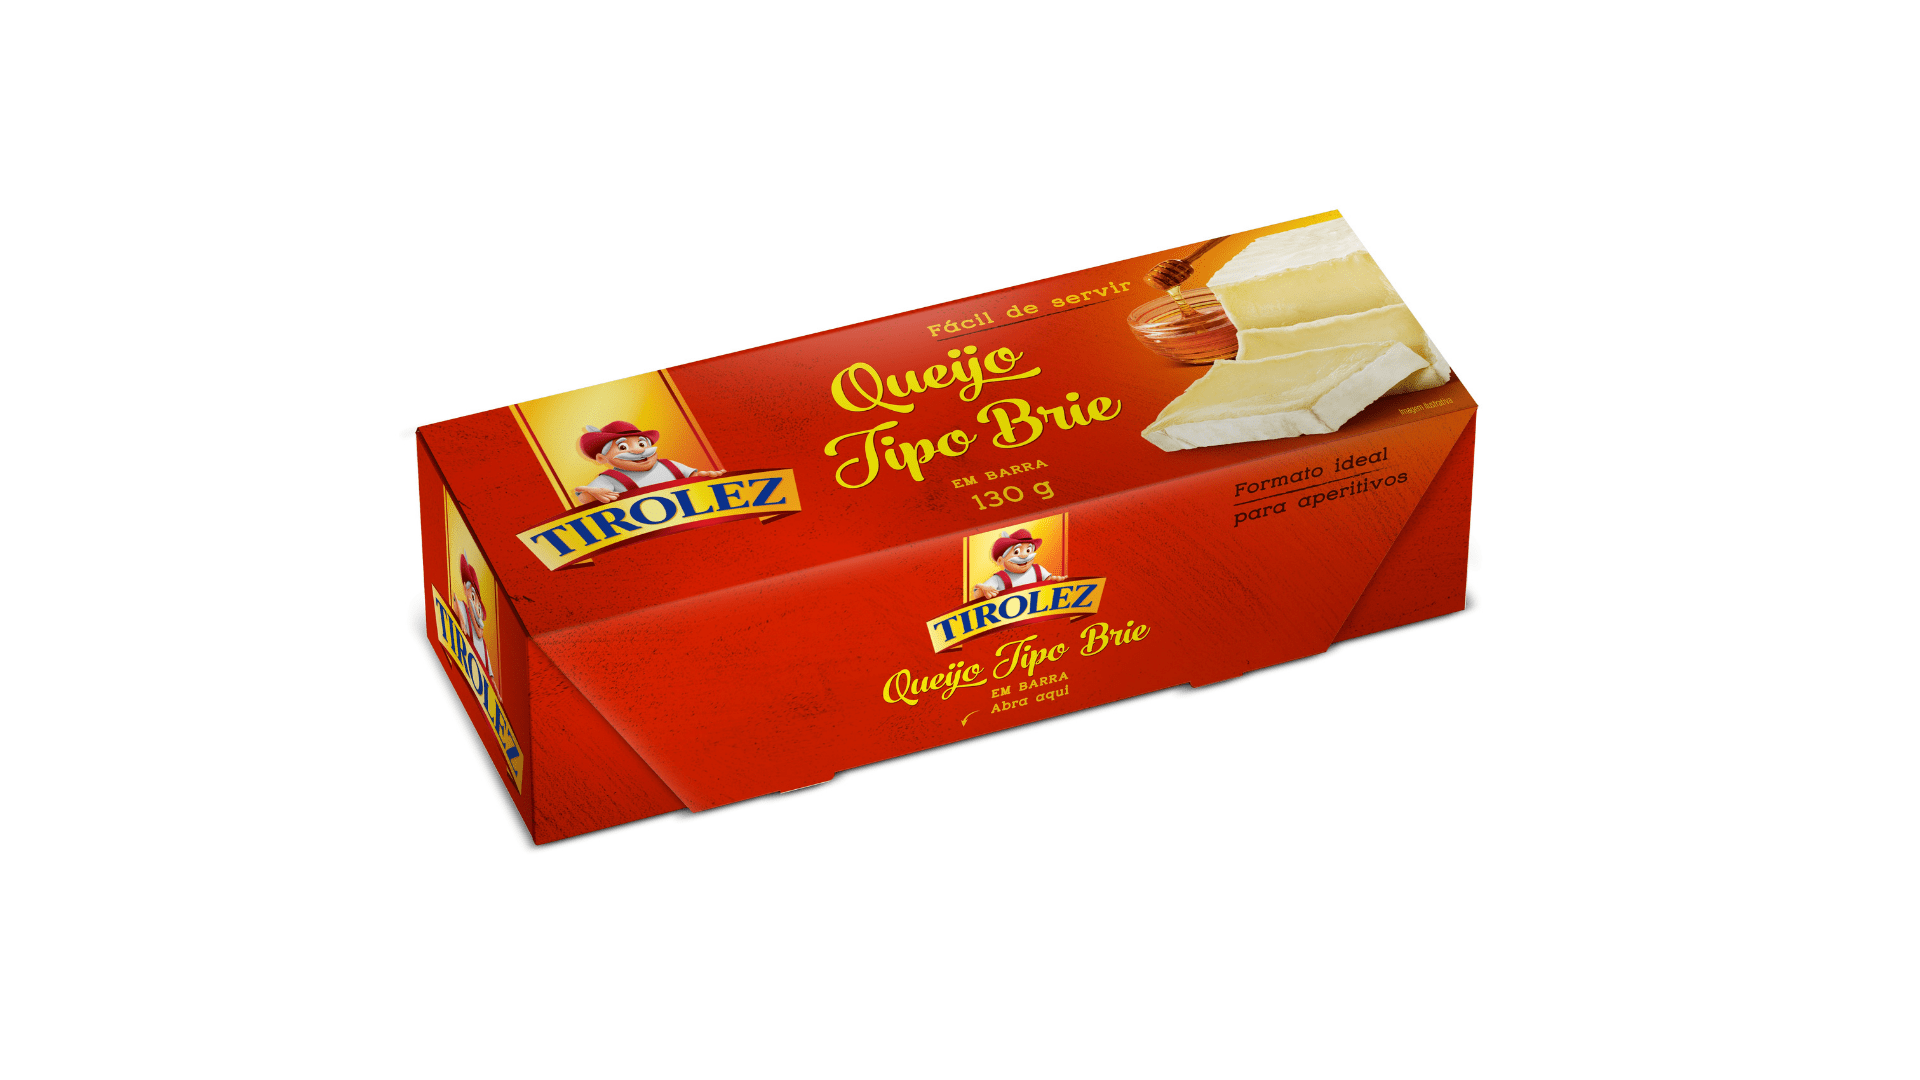 Featured image for “Tirolez lança Queijo Brie em barra de 130g”